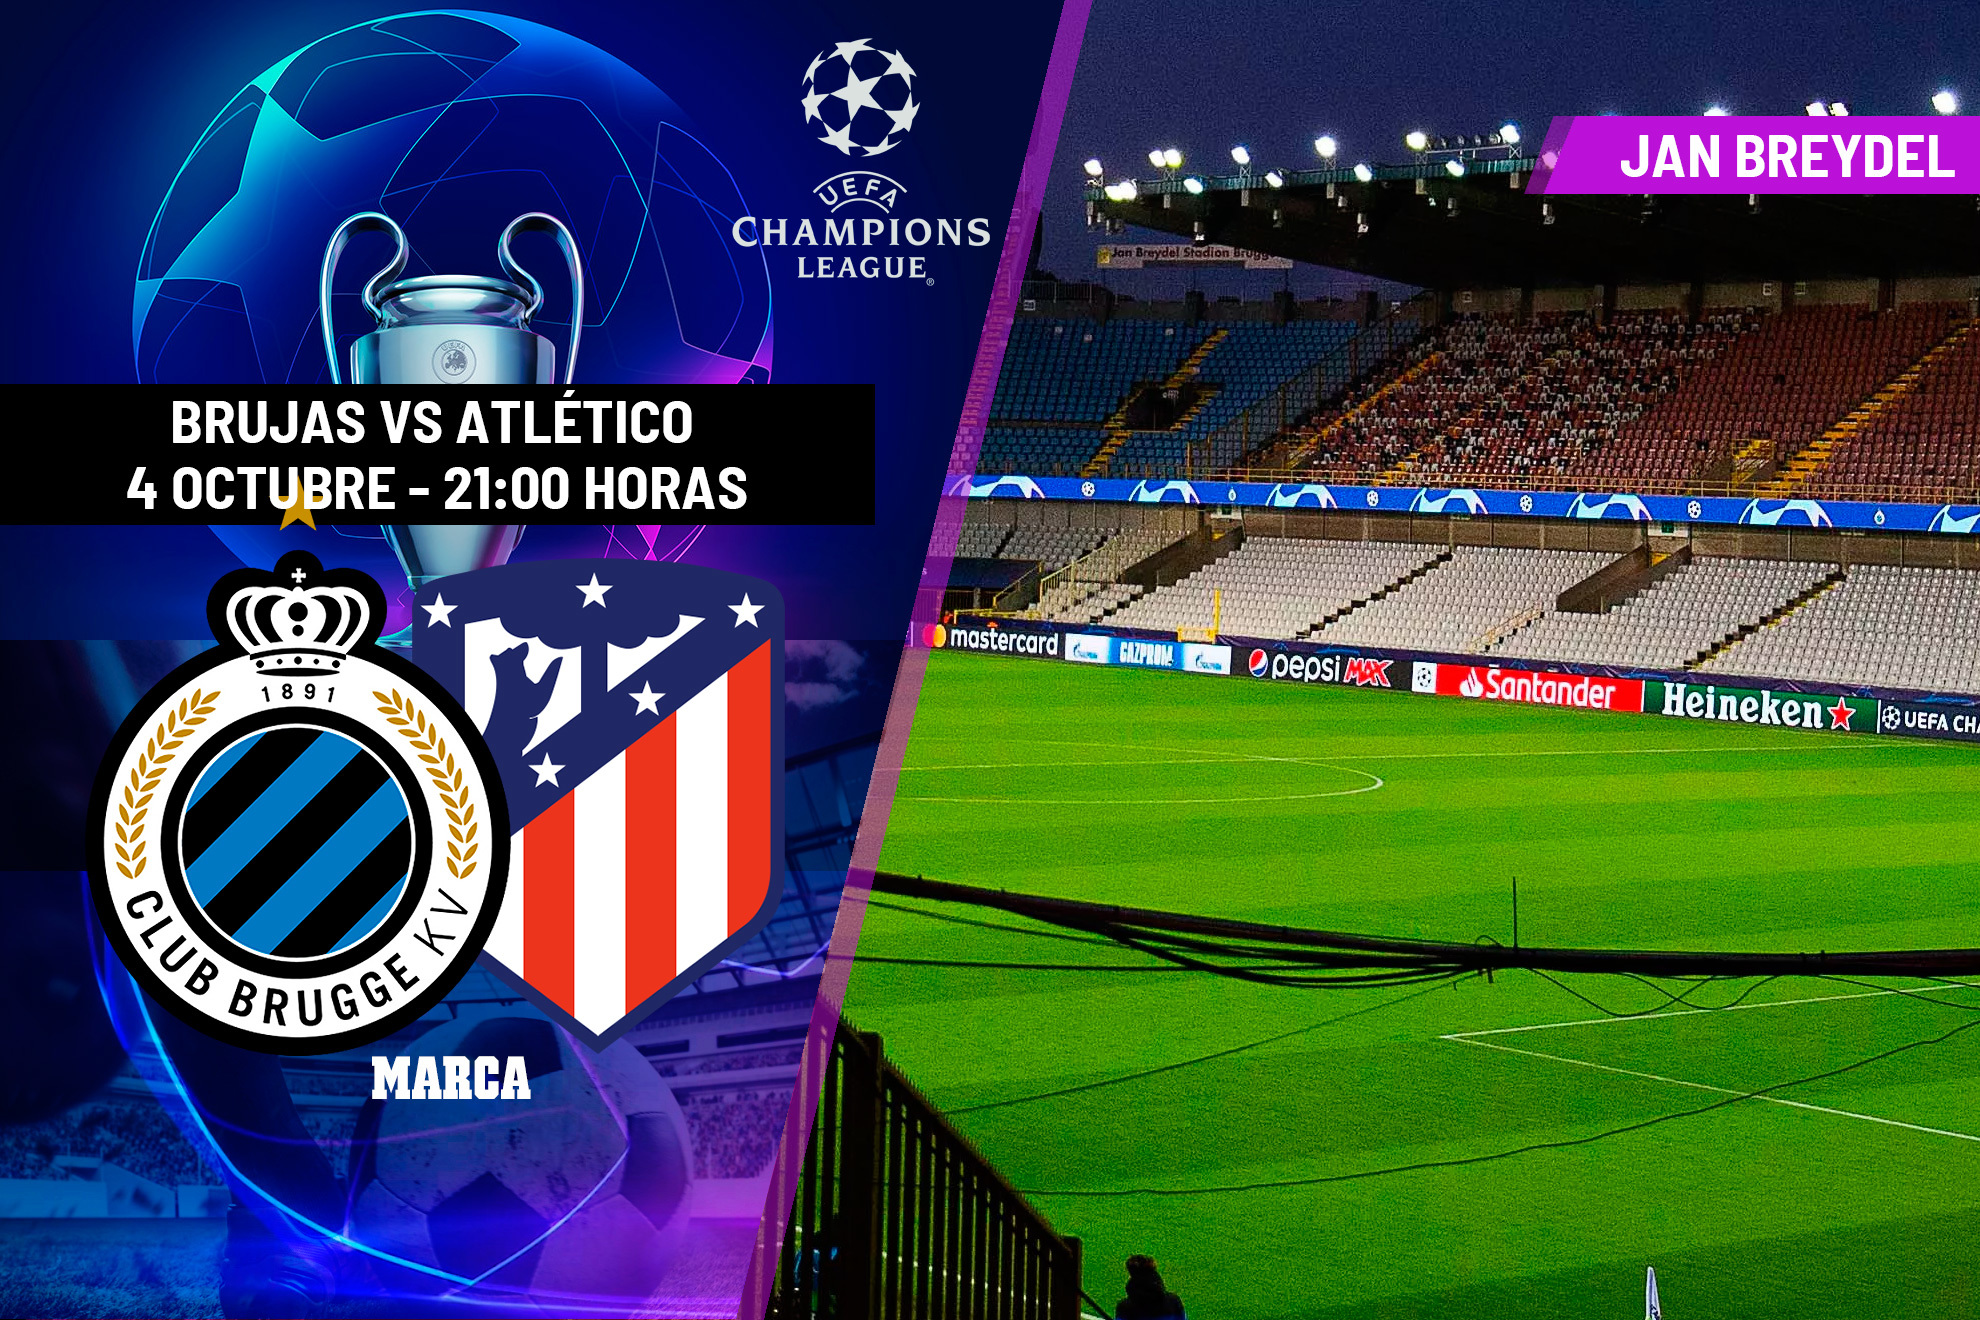 Brujas - Atlético, hoy: Alineaciones probables del partido de Champions League